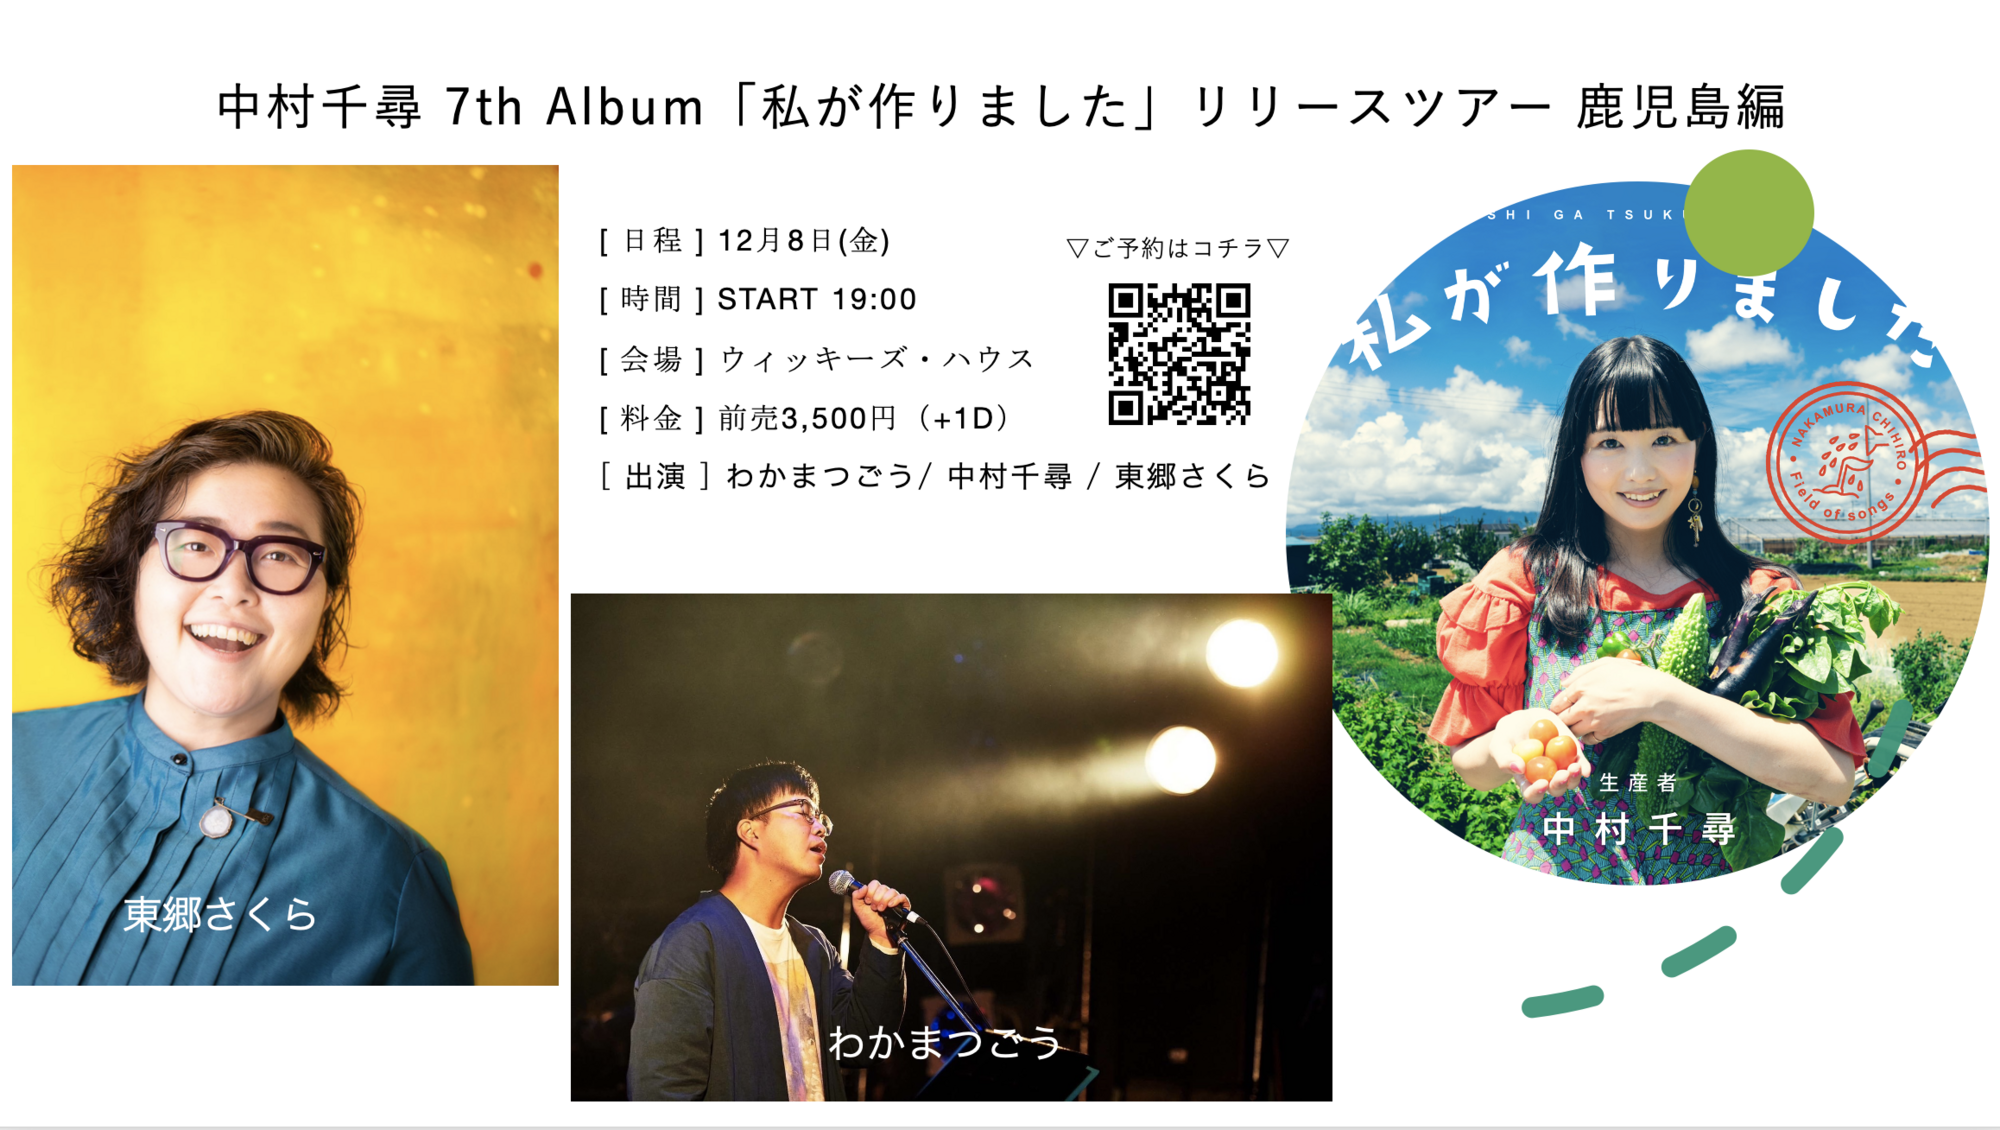 入場のみ】中村千尋 7th Album「私が作りました」リリースツアー 